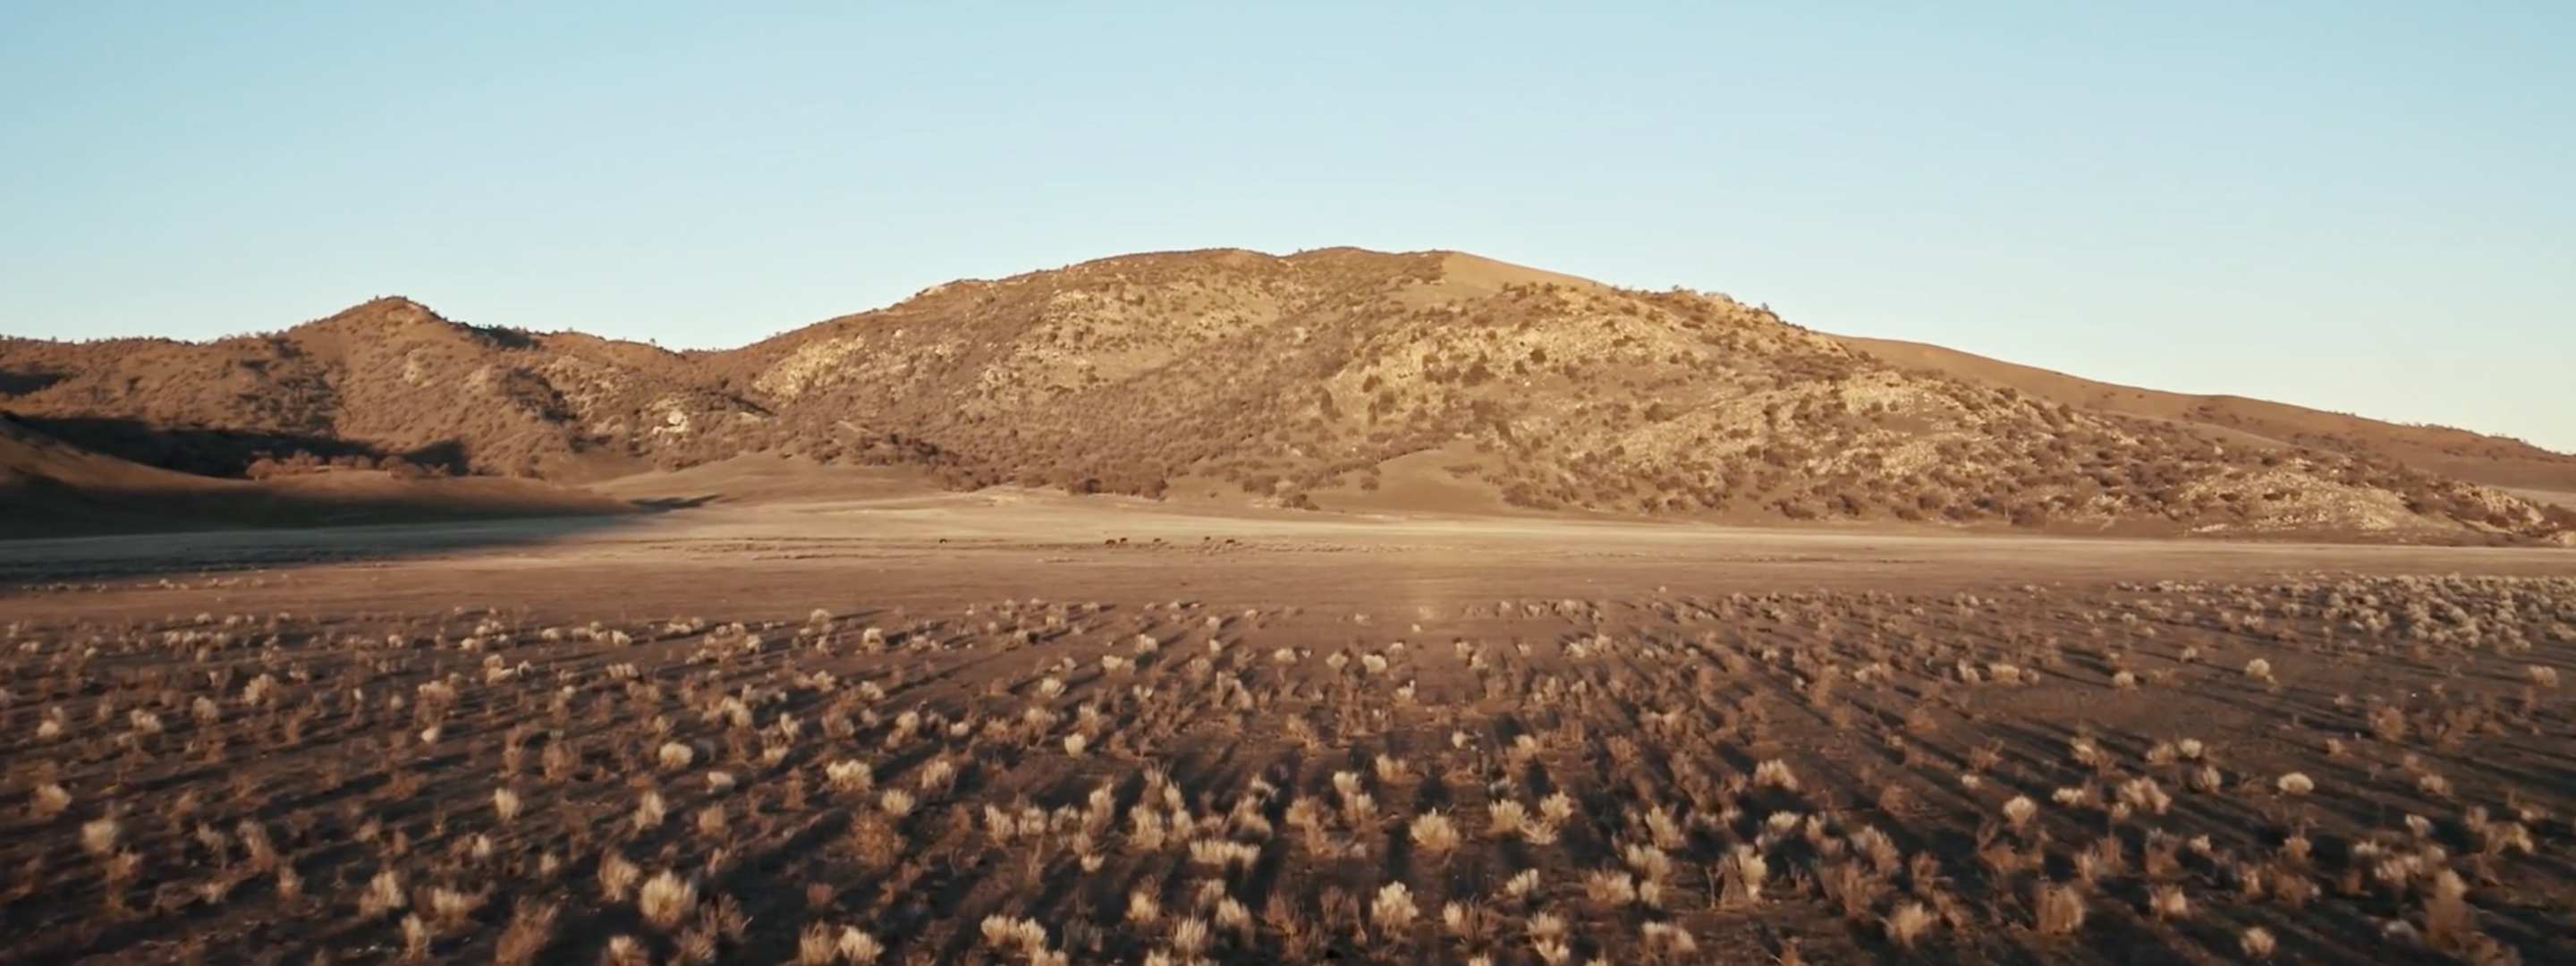 <a href="https://www.capgemini.com/news/inside-stories/mojave-desert/"></a><a href="https://www.capgemini.com/no-no/news/inside-stories/mojave-desert/">The Mojave Desert: Data for tortoises and tires</a>